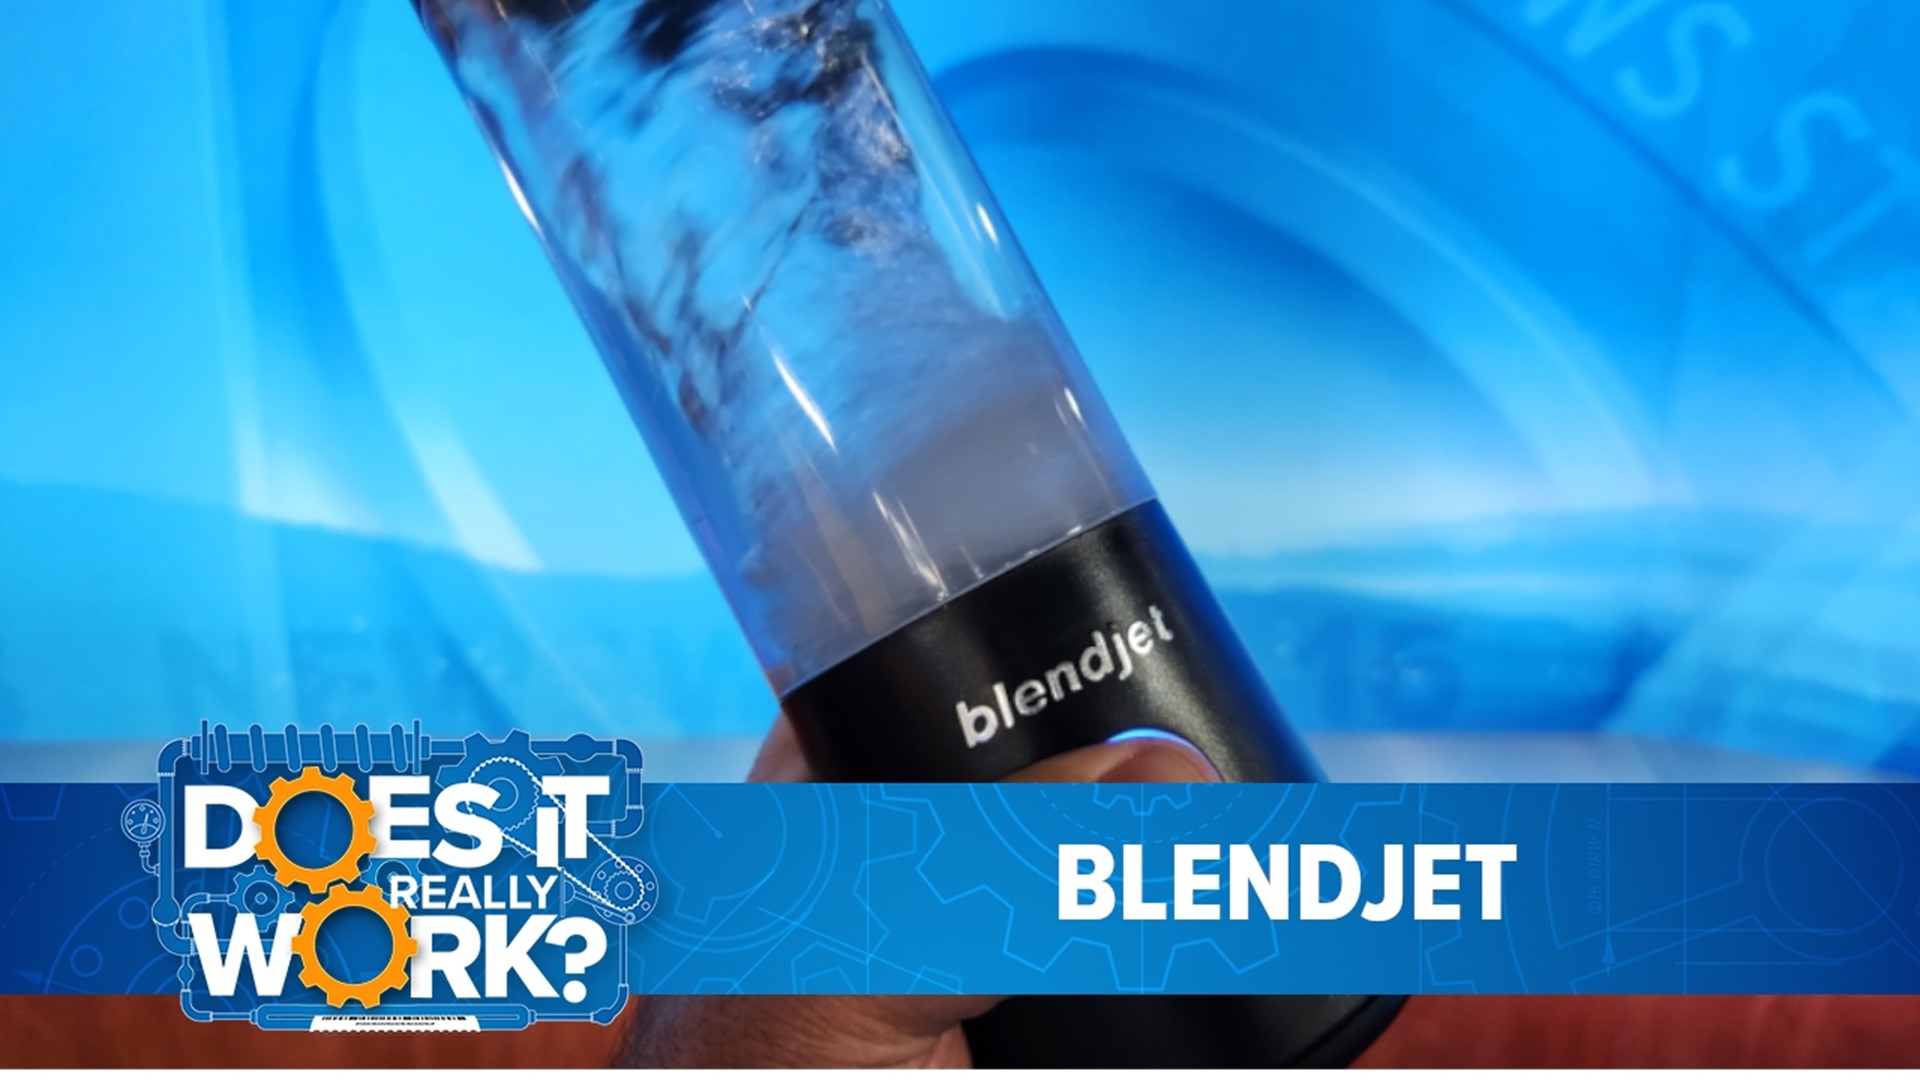 BlendJet Blender Recall: Beware of Fire, Laceration Risk